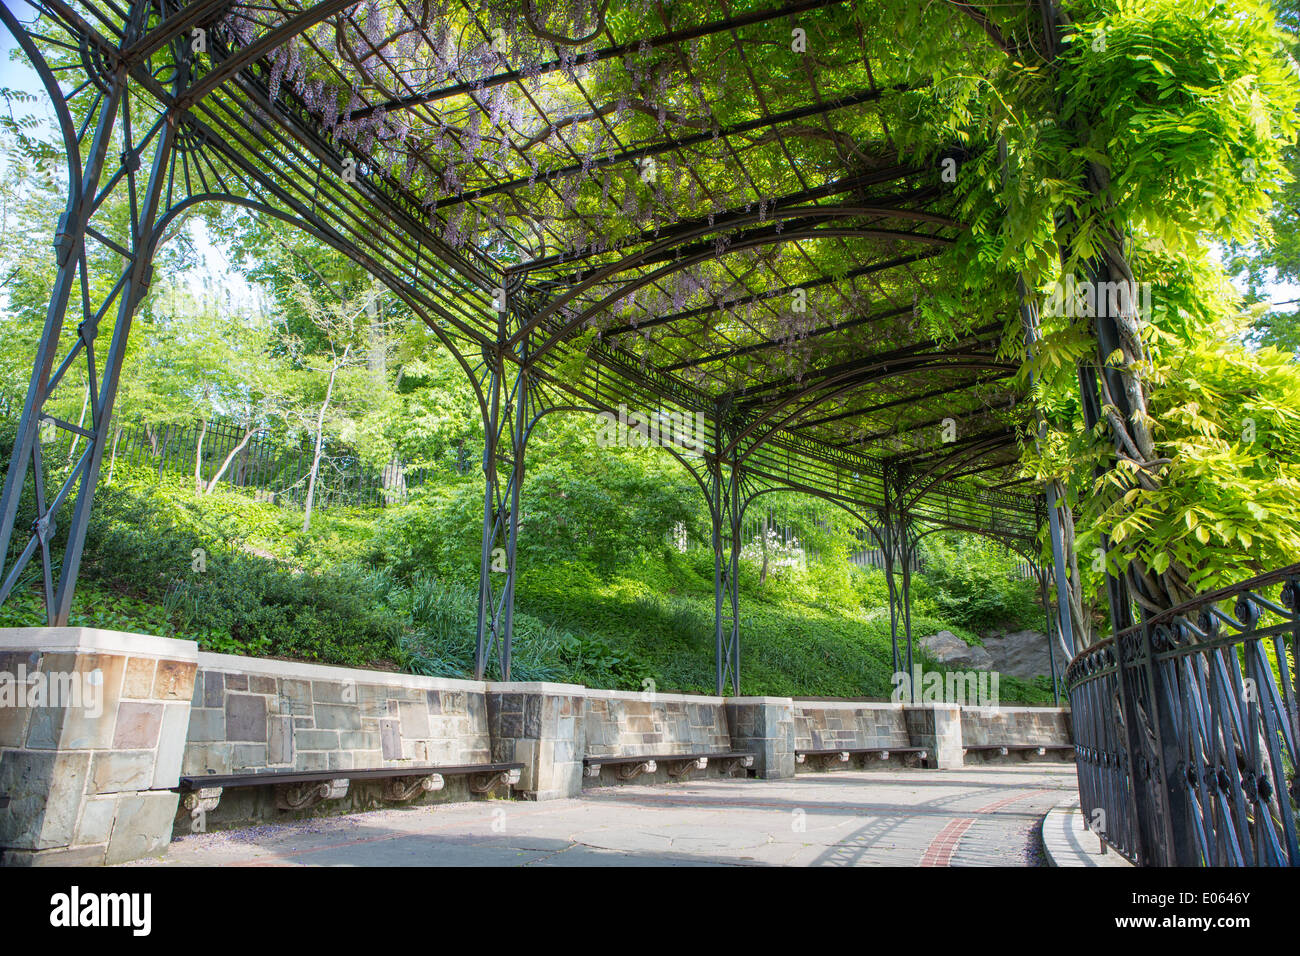 Wisteria Pergola in Central Park, NY, USA Stock Photo